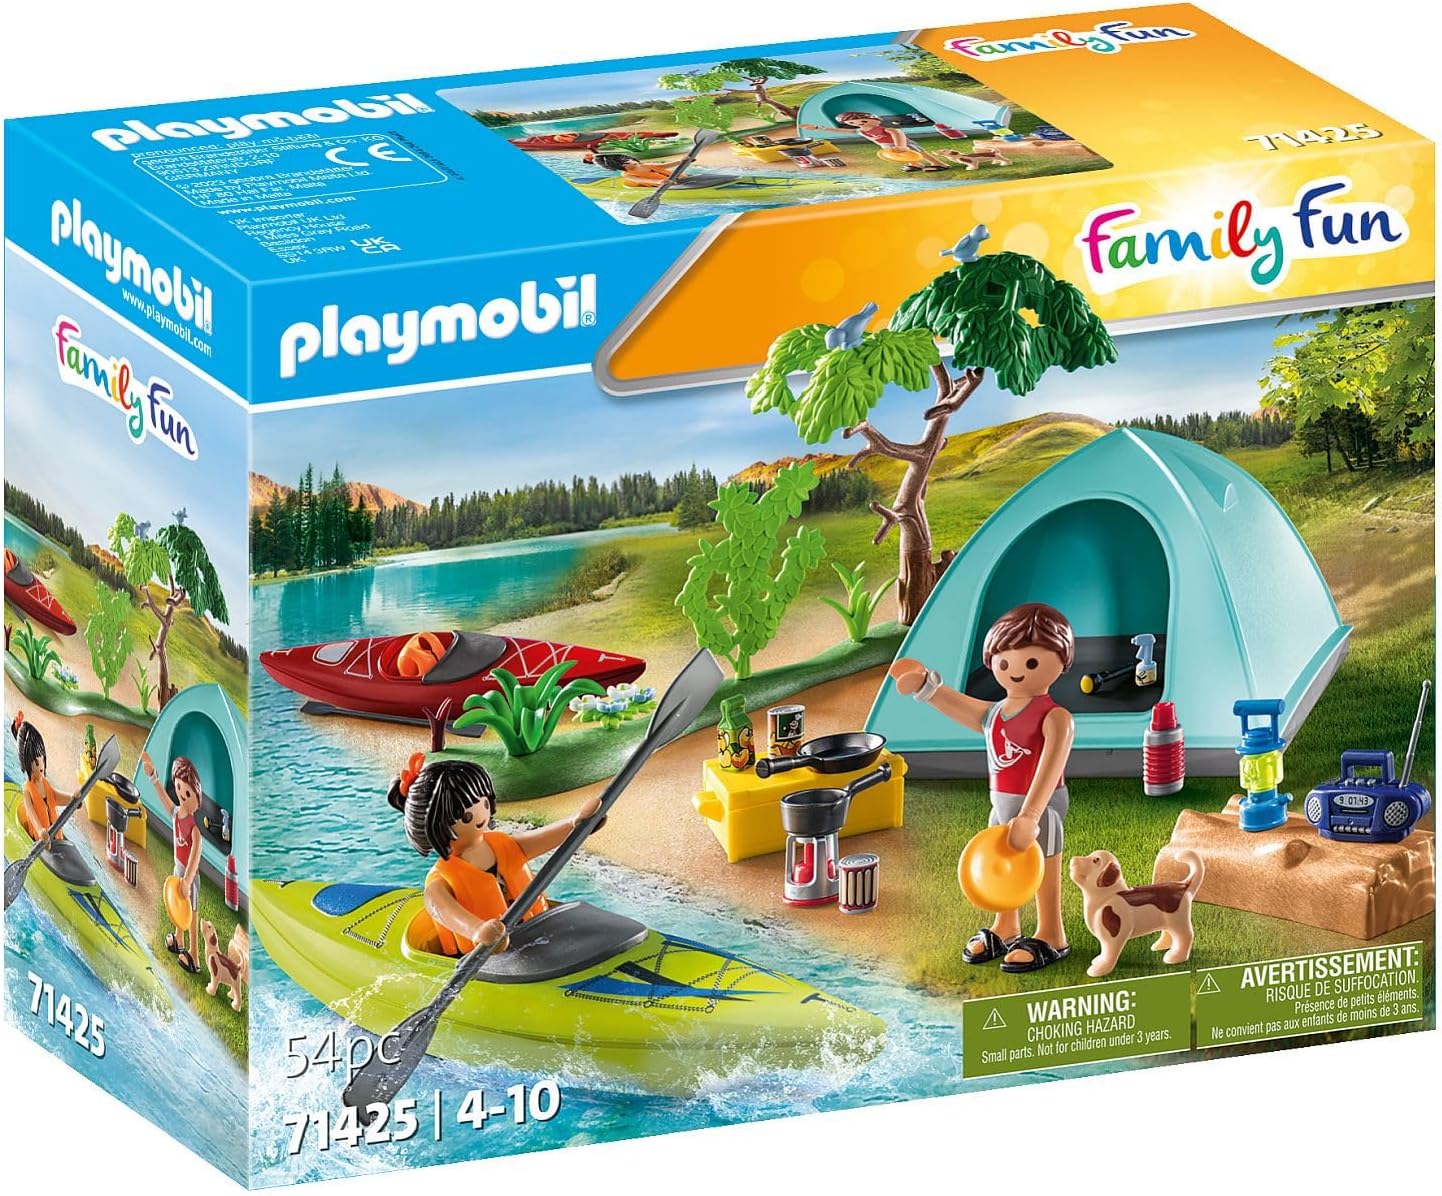 Playmobil 71425 Acampamento divertido para a família com fogueira, brinquedo ao ar livre e dramatização imaginativa, conjuntos adequados para crianças de 4 anos ou mais